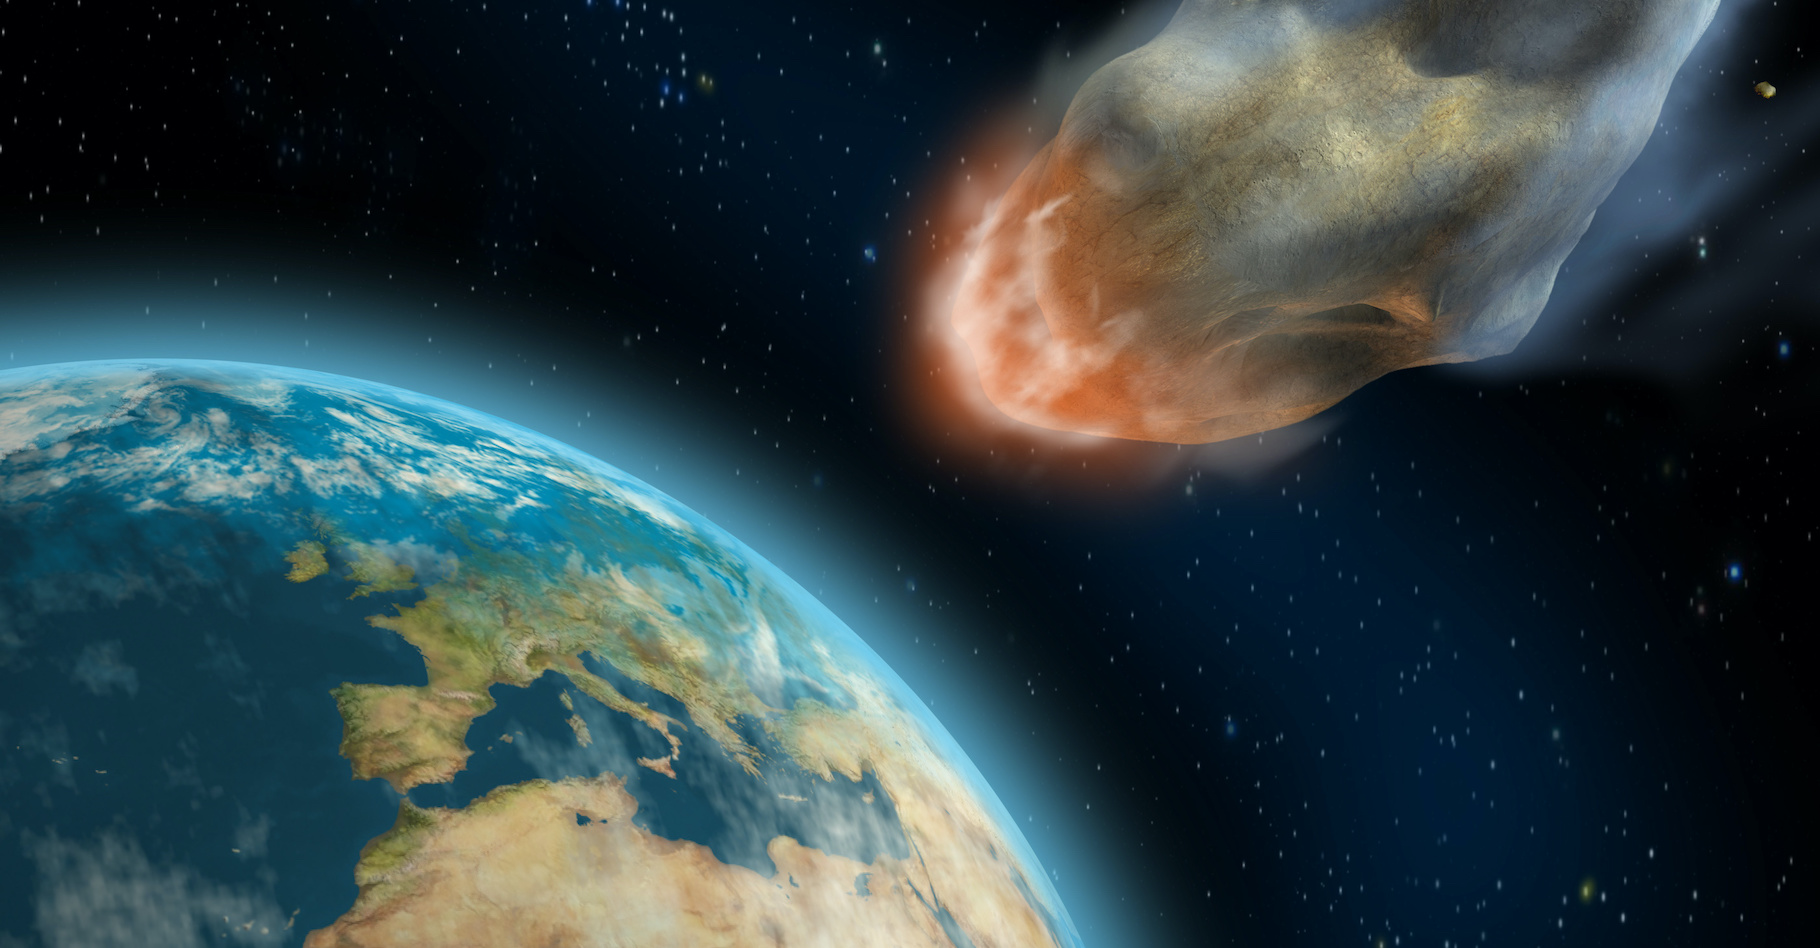 La collision d'un grand astéroïde, de diamètre supérieur à 140 mètres, avec la Terre est heureusement très peu probable. © Andrea Danti, Adobe Stock